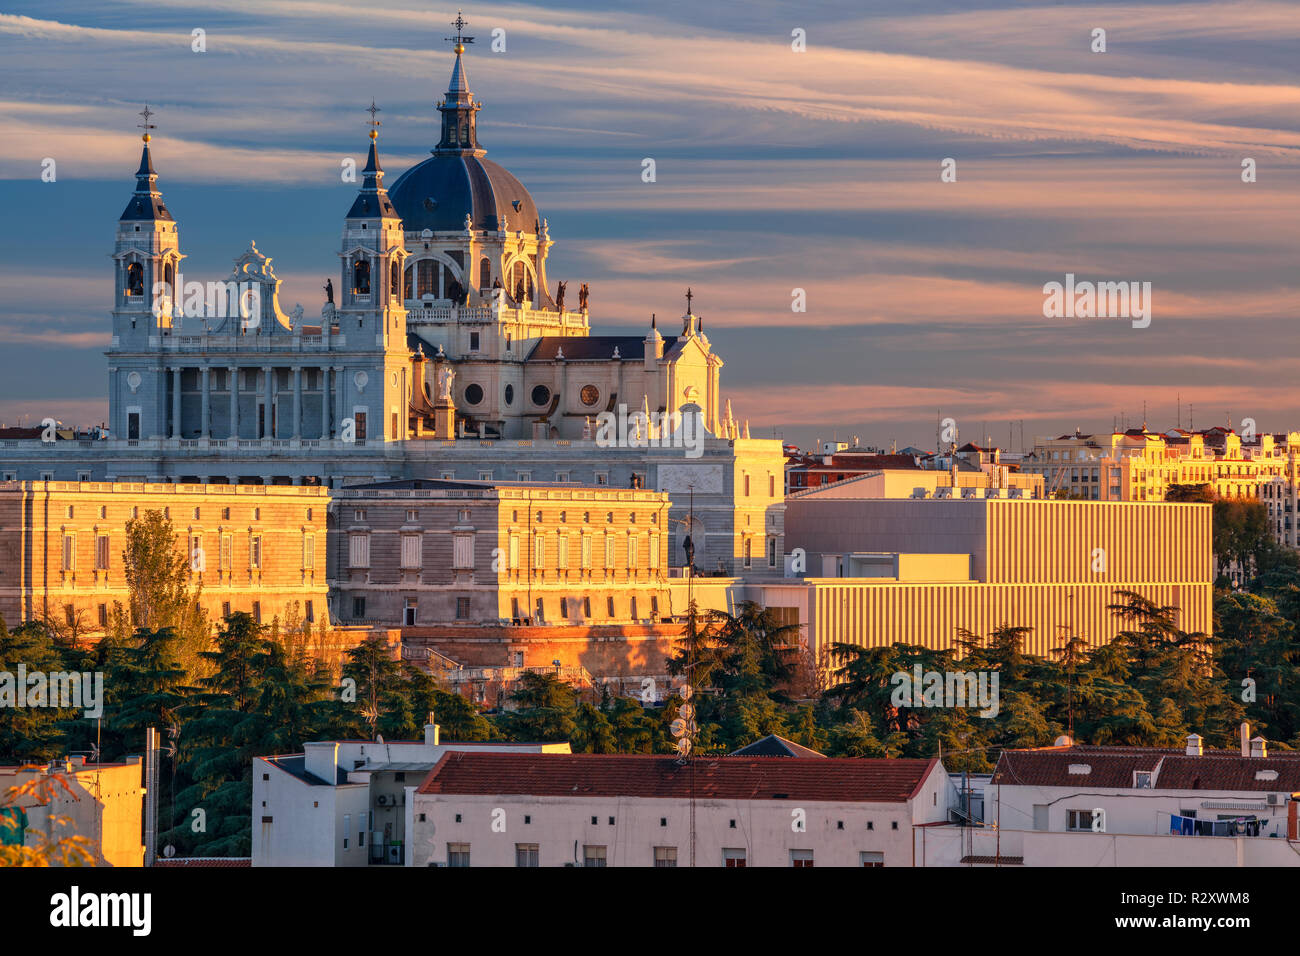 Madrid. Droit de Madrid skyline avec Santa Maria la Real de la cathédrale Almudena et le Palais Royal pendant le coucher du soleil. Banque D'Images